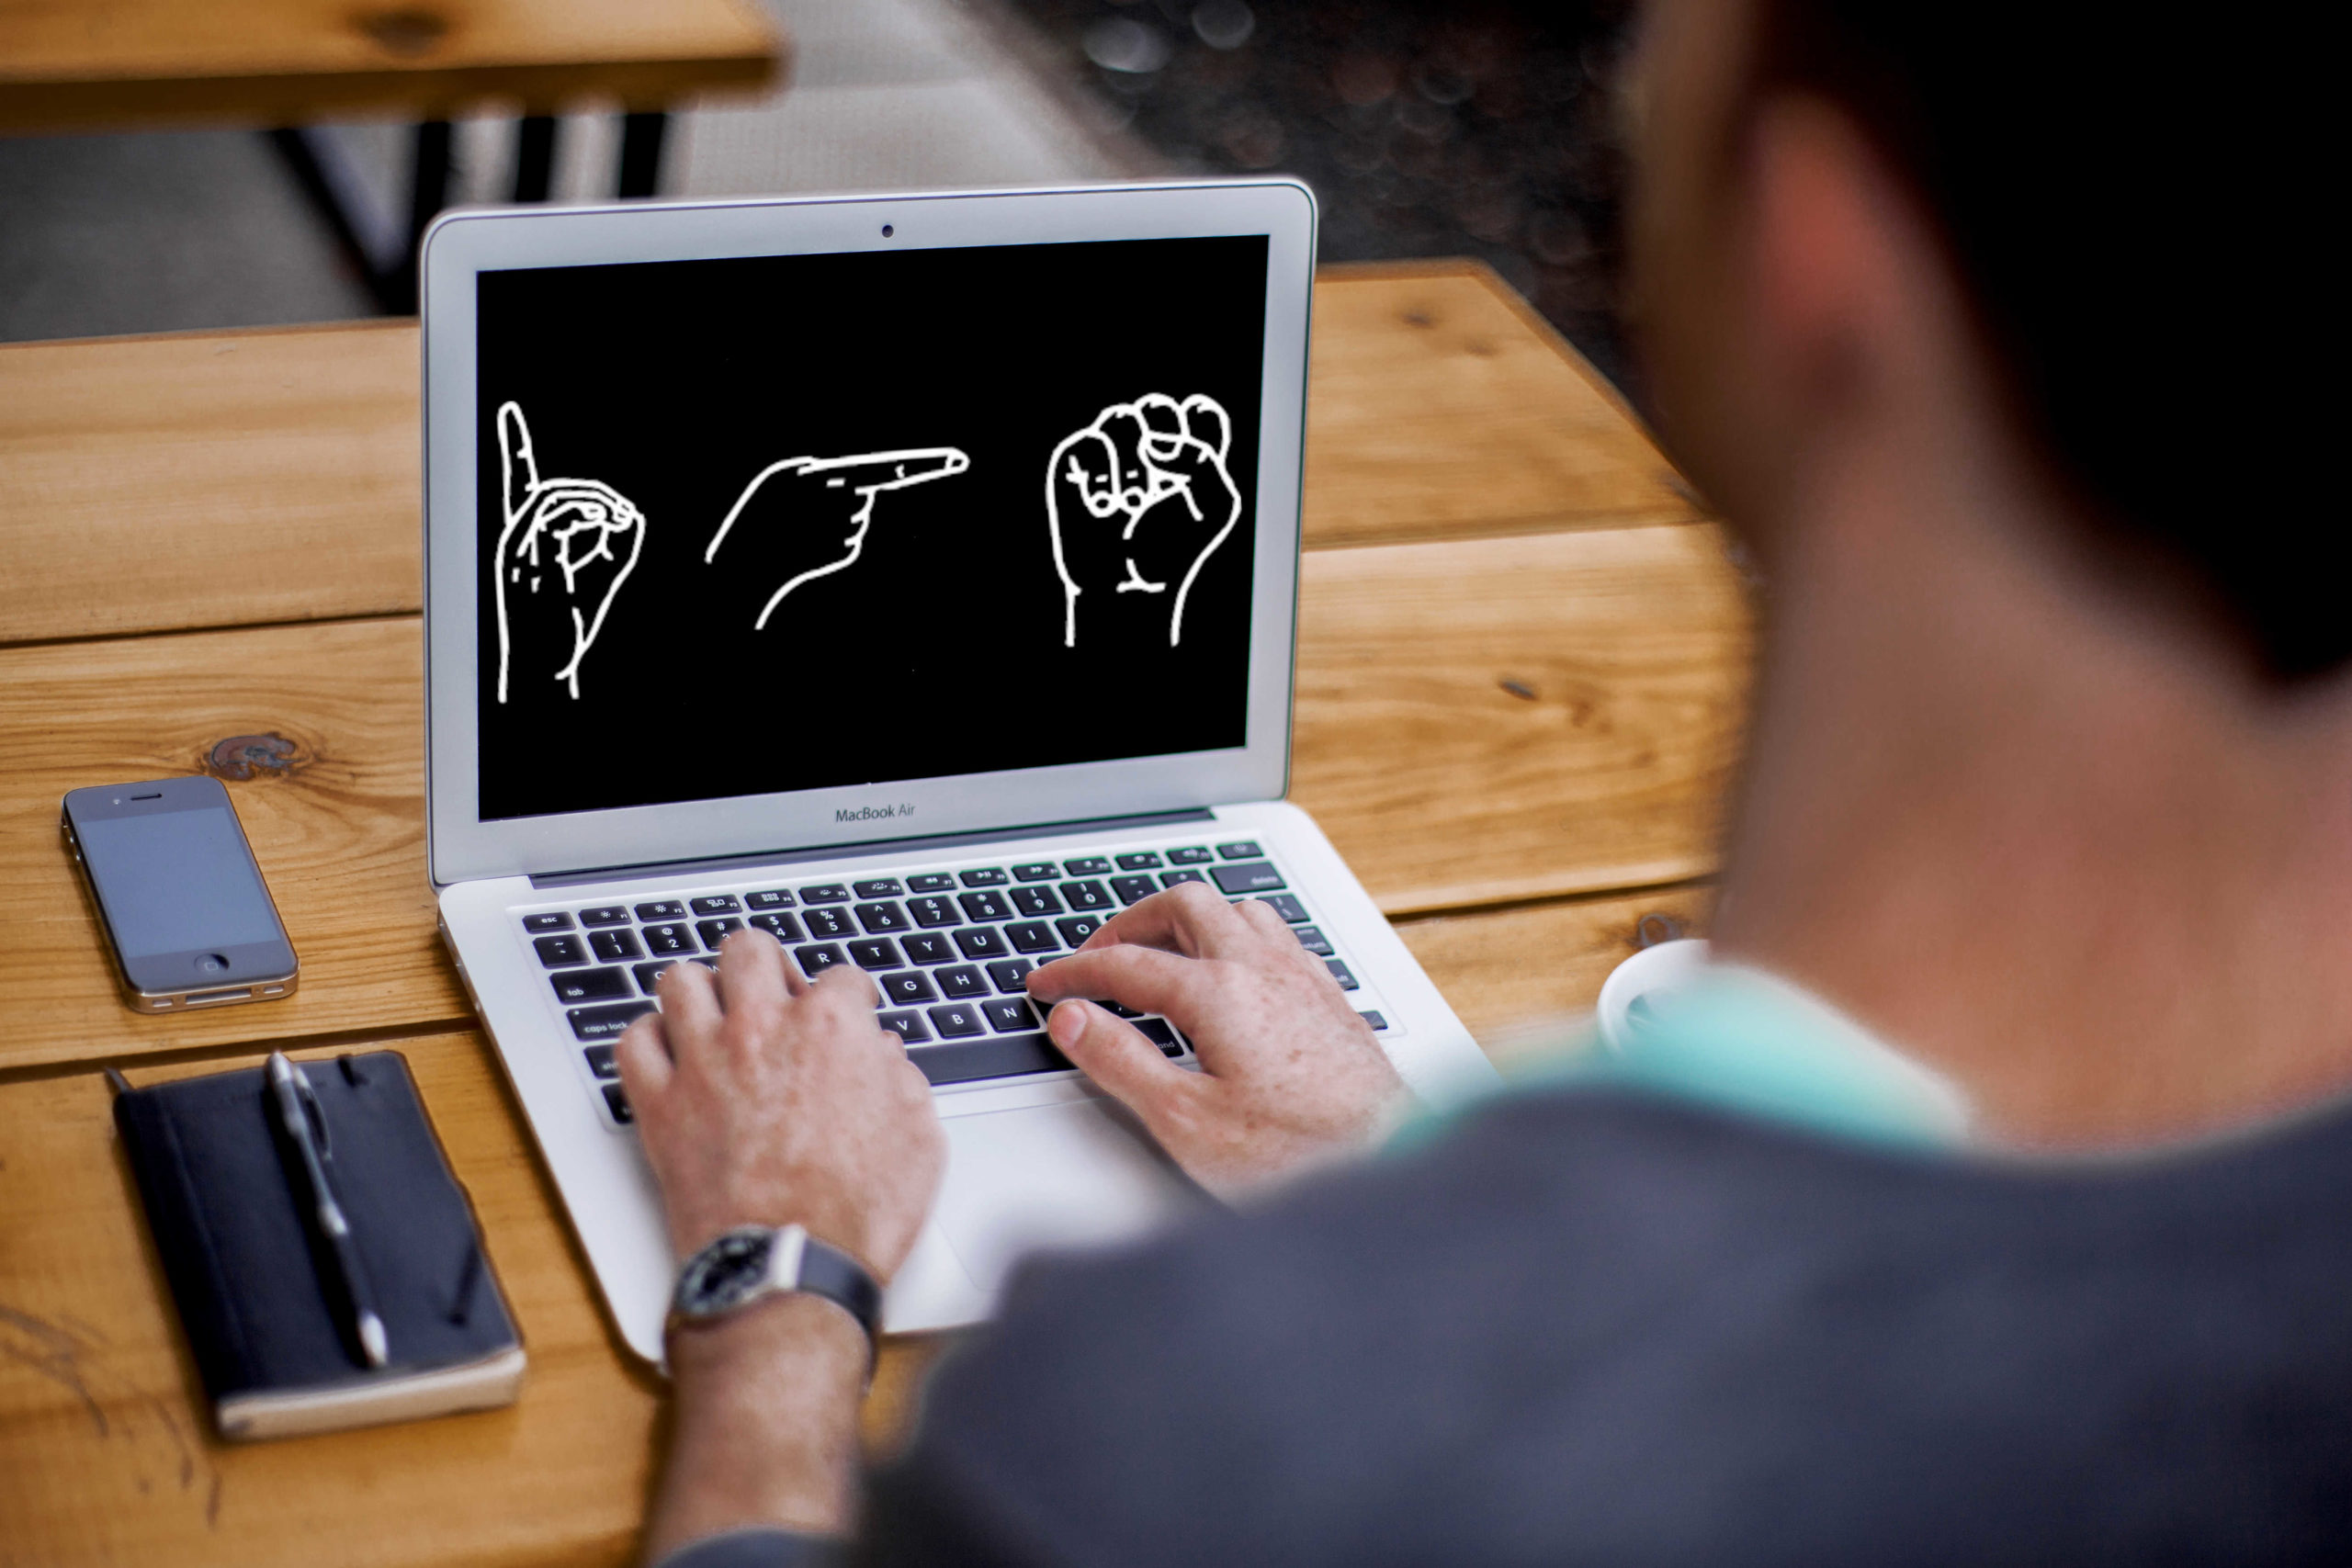 Eine Person sitzt vor einem Laptop, auf dem "DGS" im Fingeralphabet abgebildet ist.